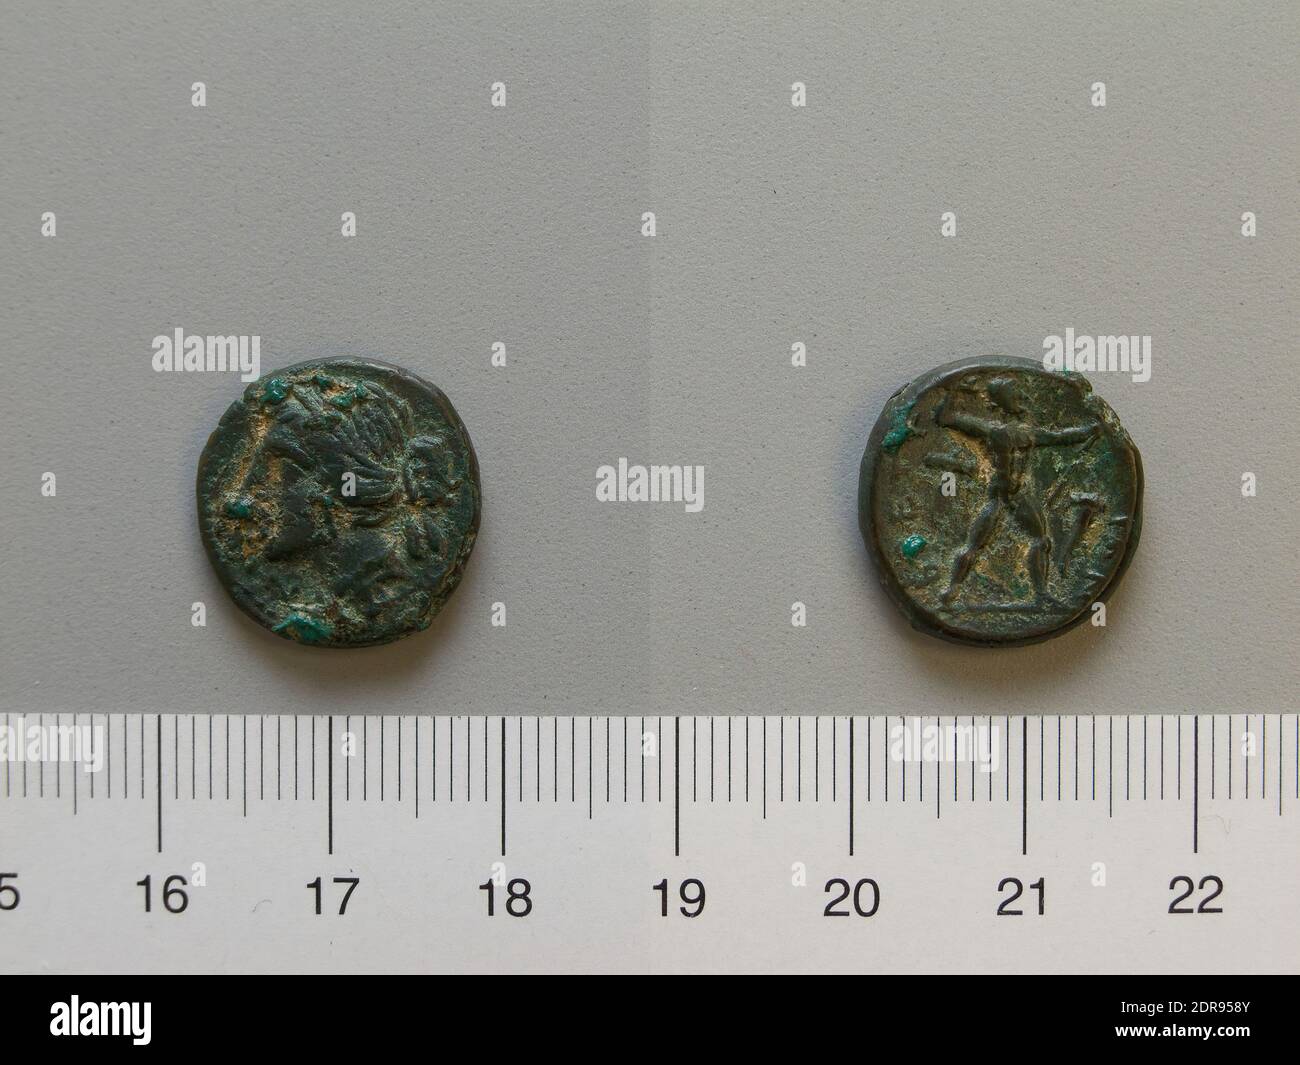 Mint: Bruttii, Bruttium, Hemidrachm from Brettii, 214–211 B.C., Bronze, 3.82 g, 12:00, 17 mm, Made in Bruttii, Bruttium, Greek, 3rd century B.C., Numismatics Stock Photo